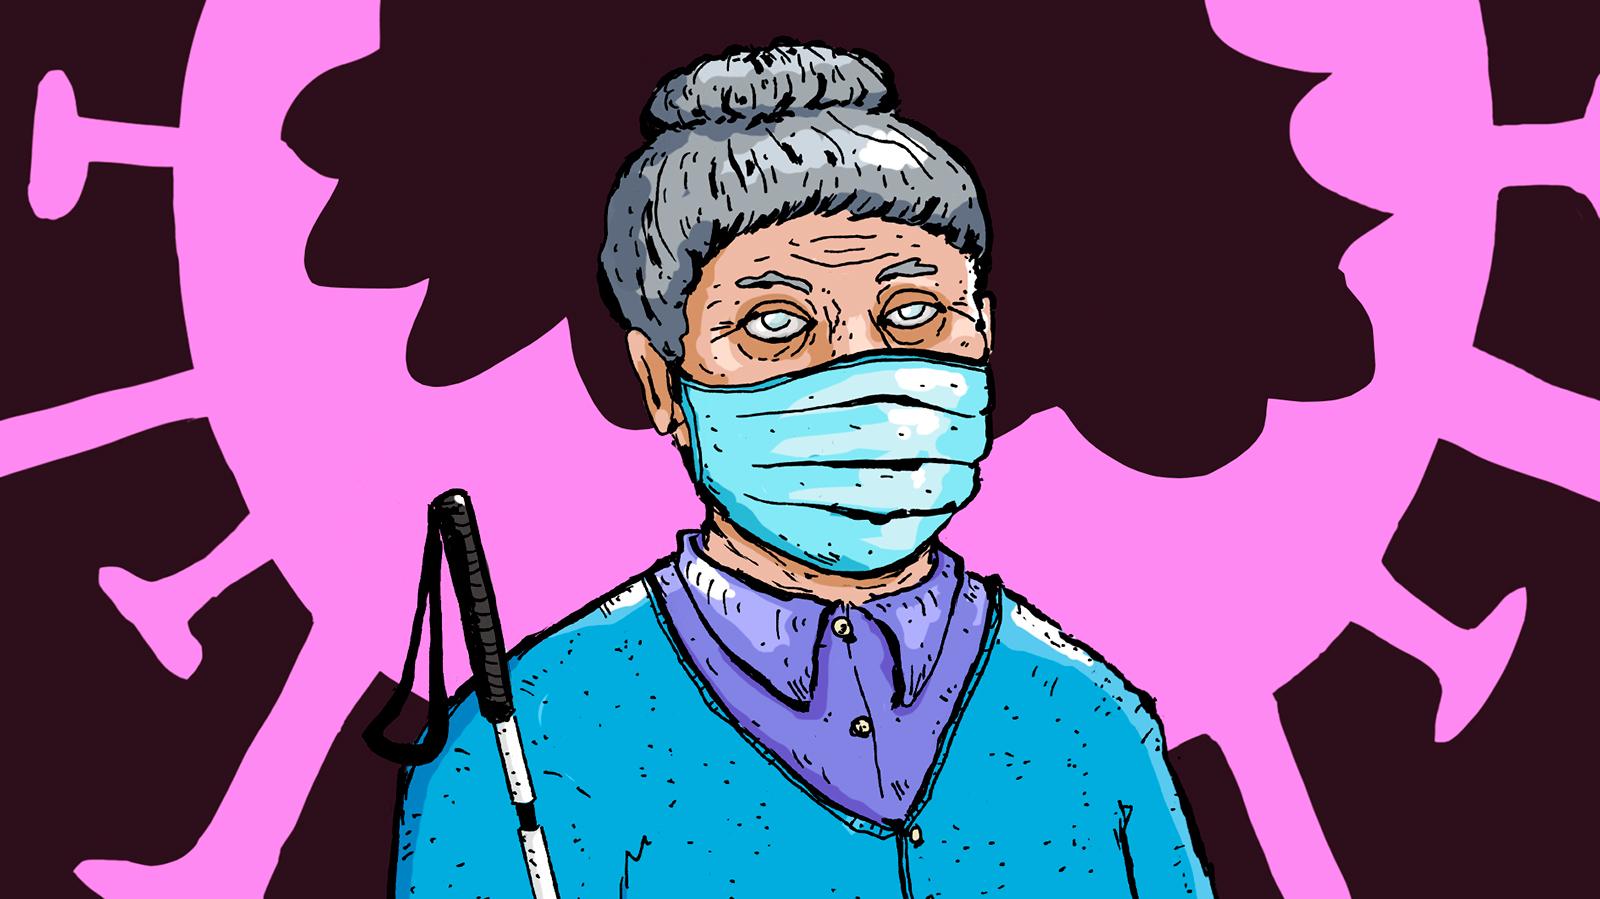 Vanha nainen suojamaski kasvoillaan ja valkoinen keppi kädessään. Taustalla iso koronavirus suu ammollaan.